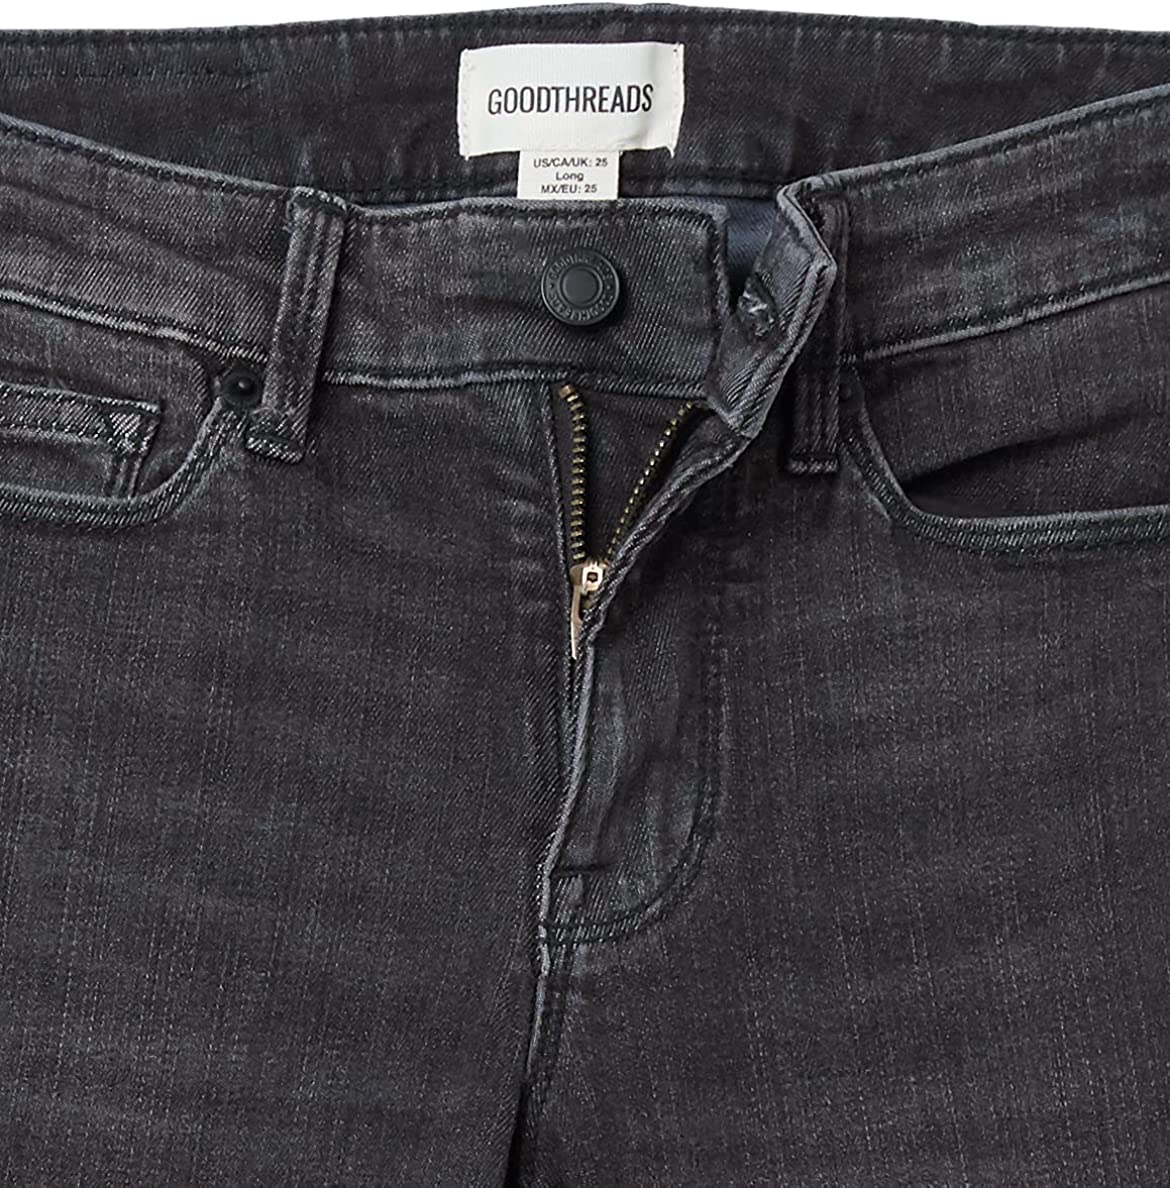 Goodthreads Women's Mid-Rise Skinny Jean